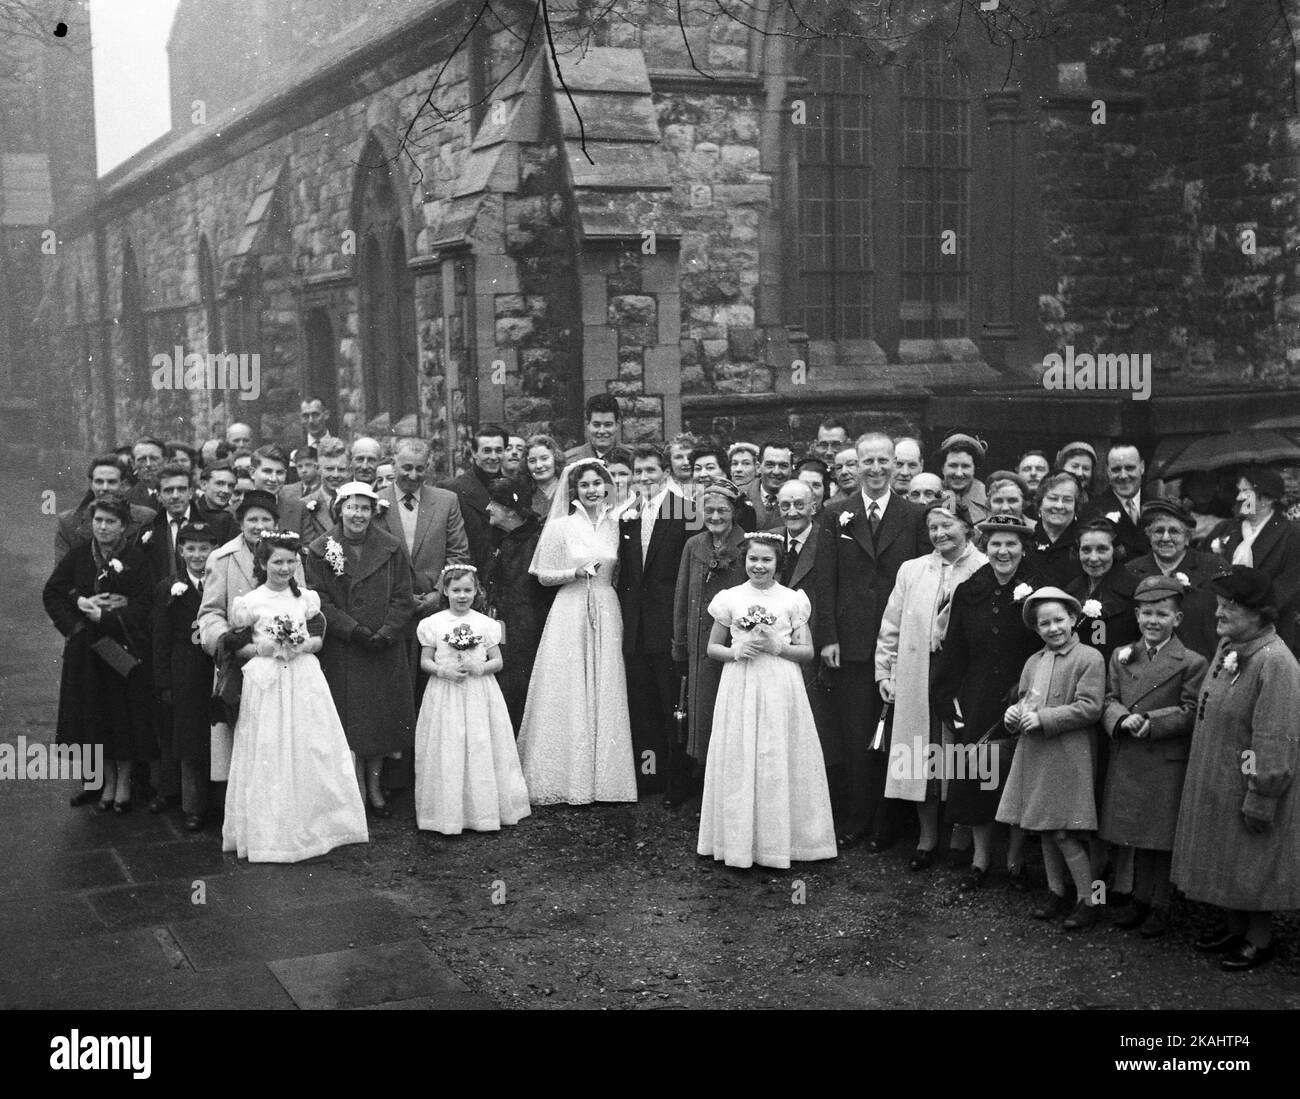 Hochzeitstag von Mr & Mrs Francis von 23 Myrtle Road, London E17 c1952 Gruppenfoto der Teilnehmer der Hochzeit vor der St. Saviour's Church, Walthamstow. Foto von Tony Henshaw Archive Stockfoto